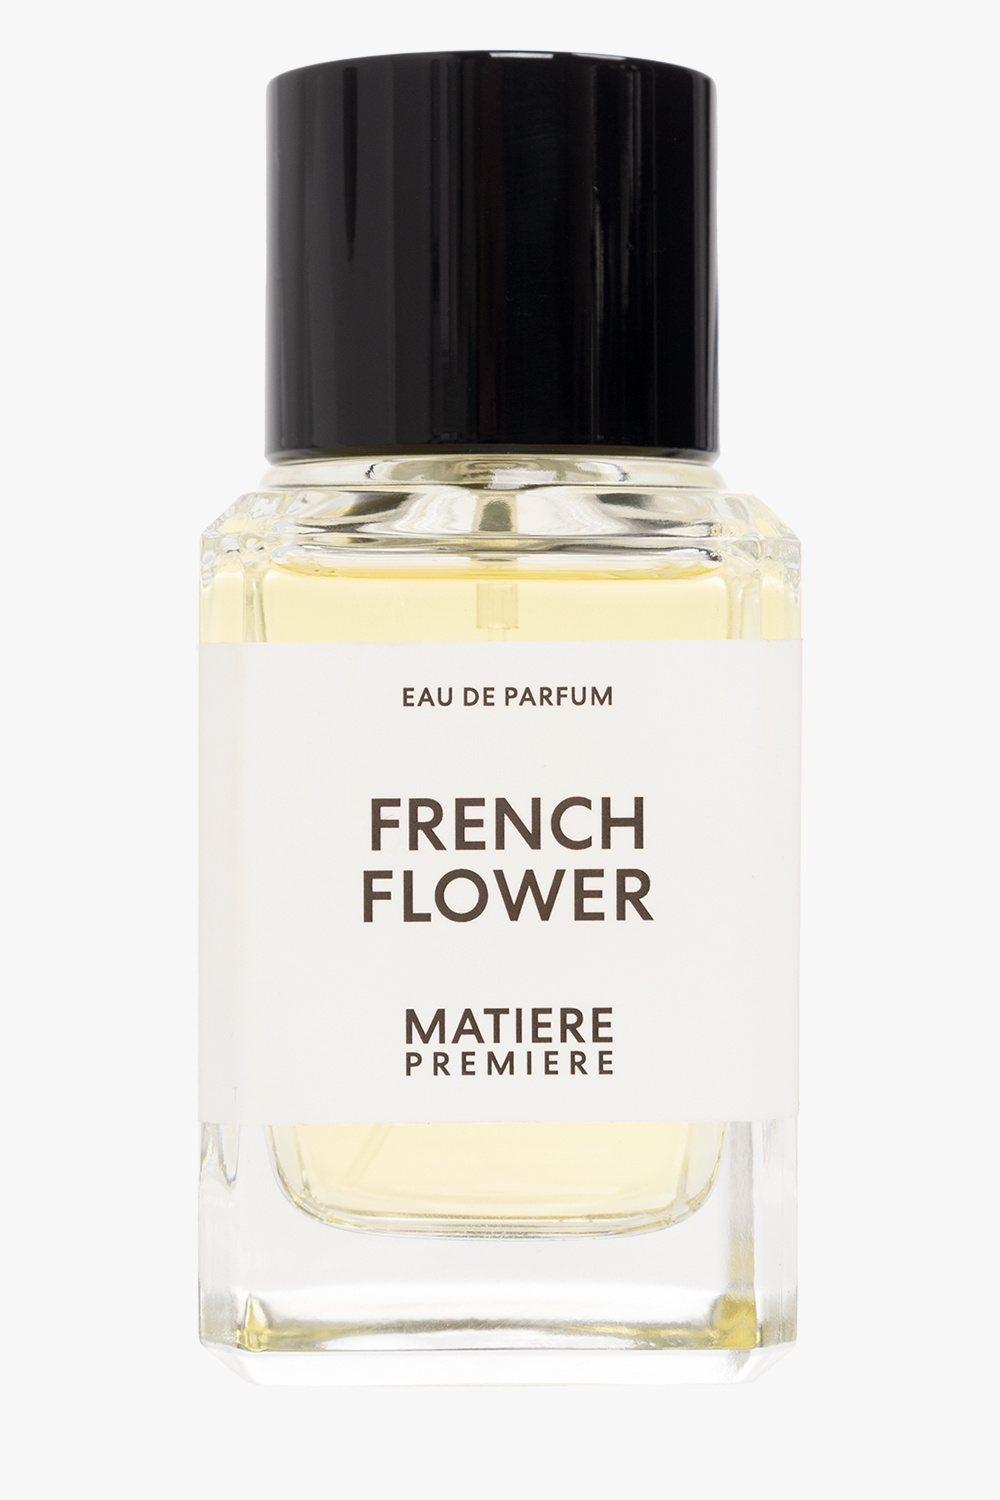 Matiere Premiere ‘French Flower’ eau de parfum